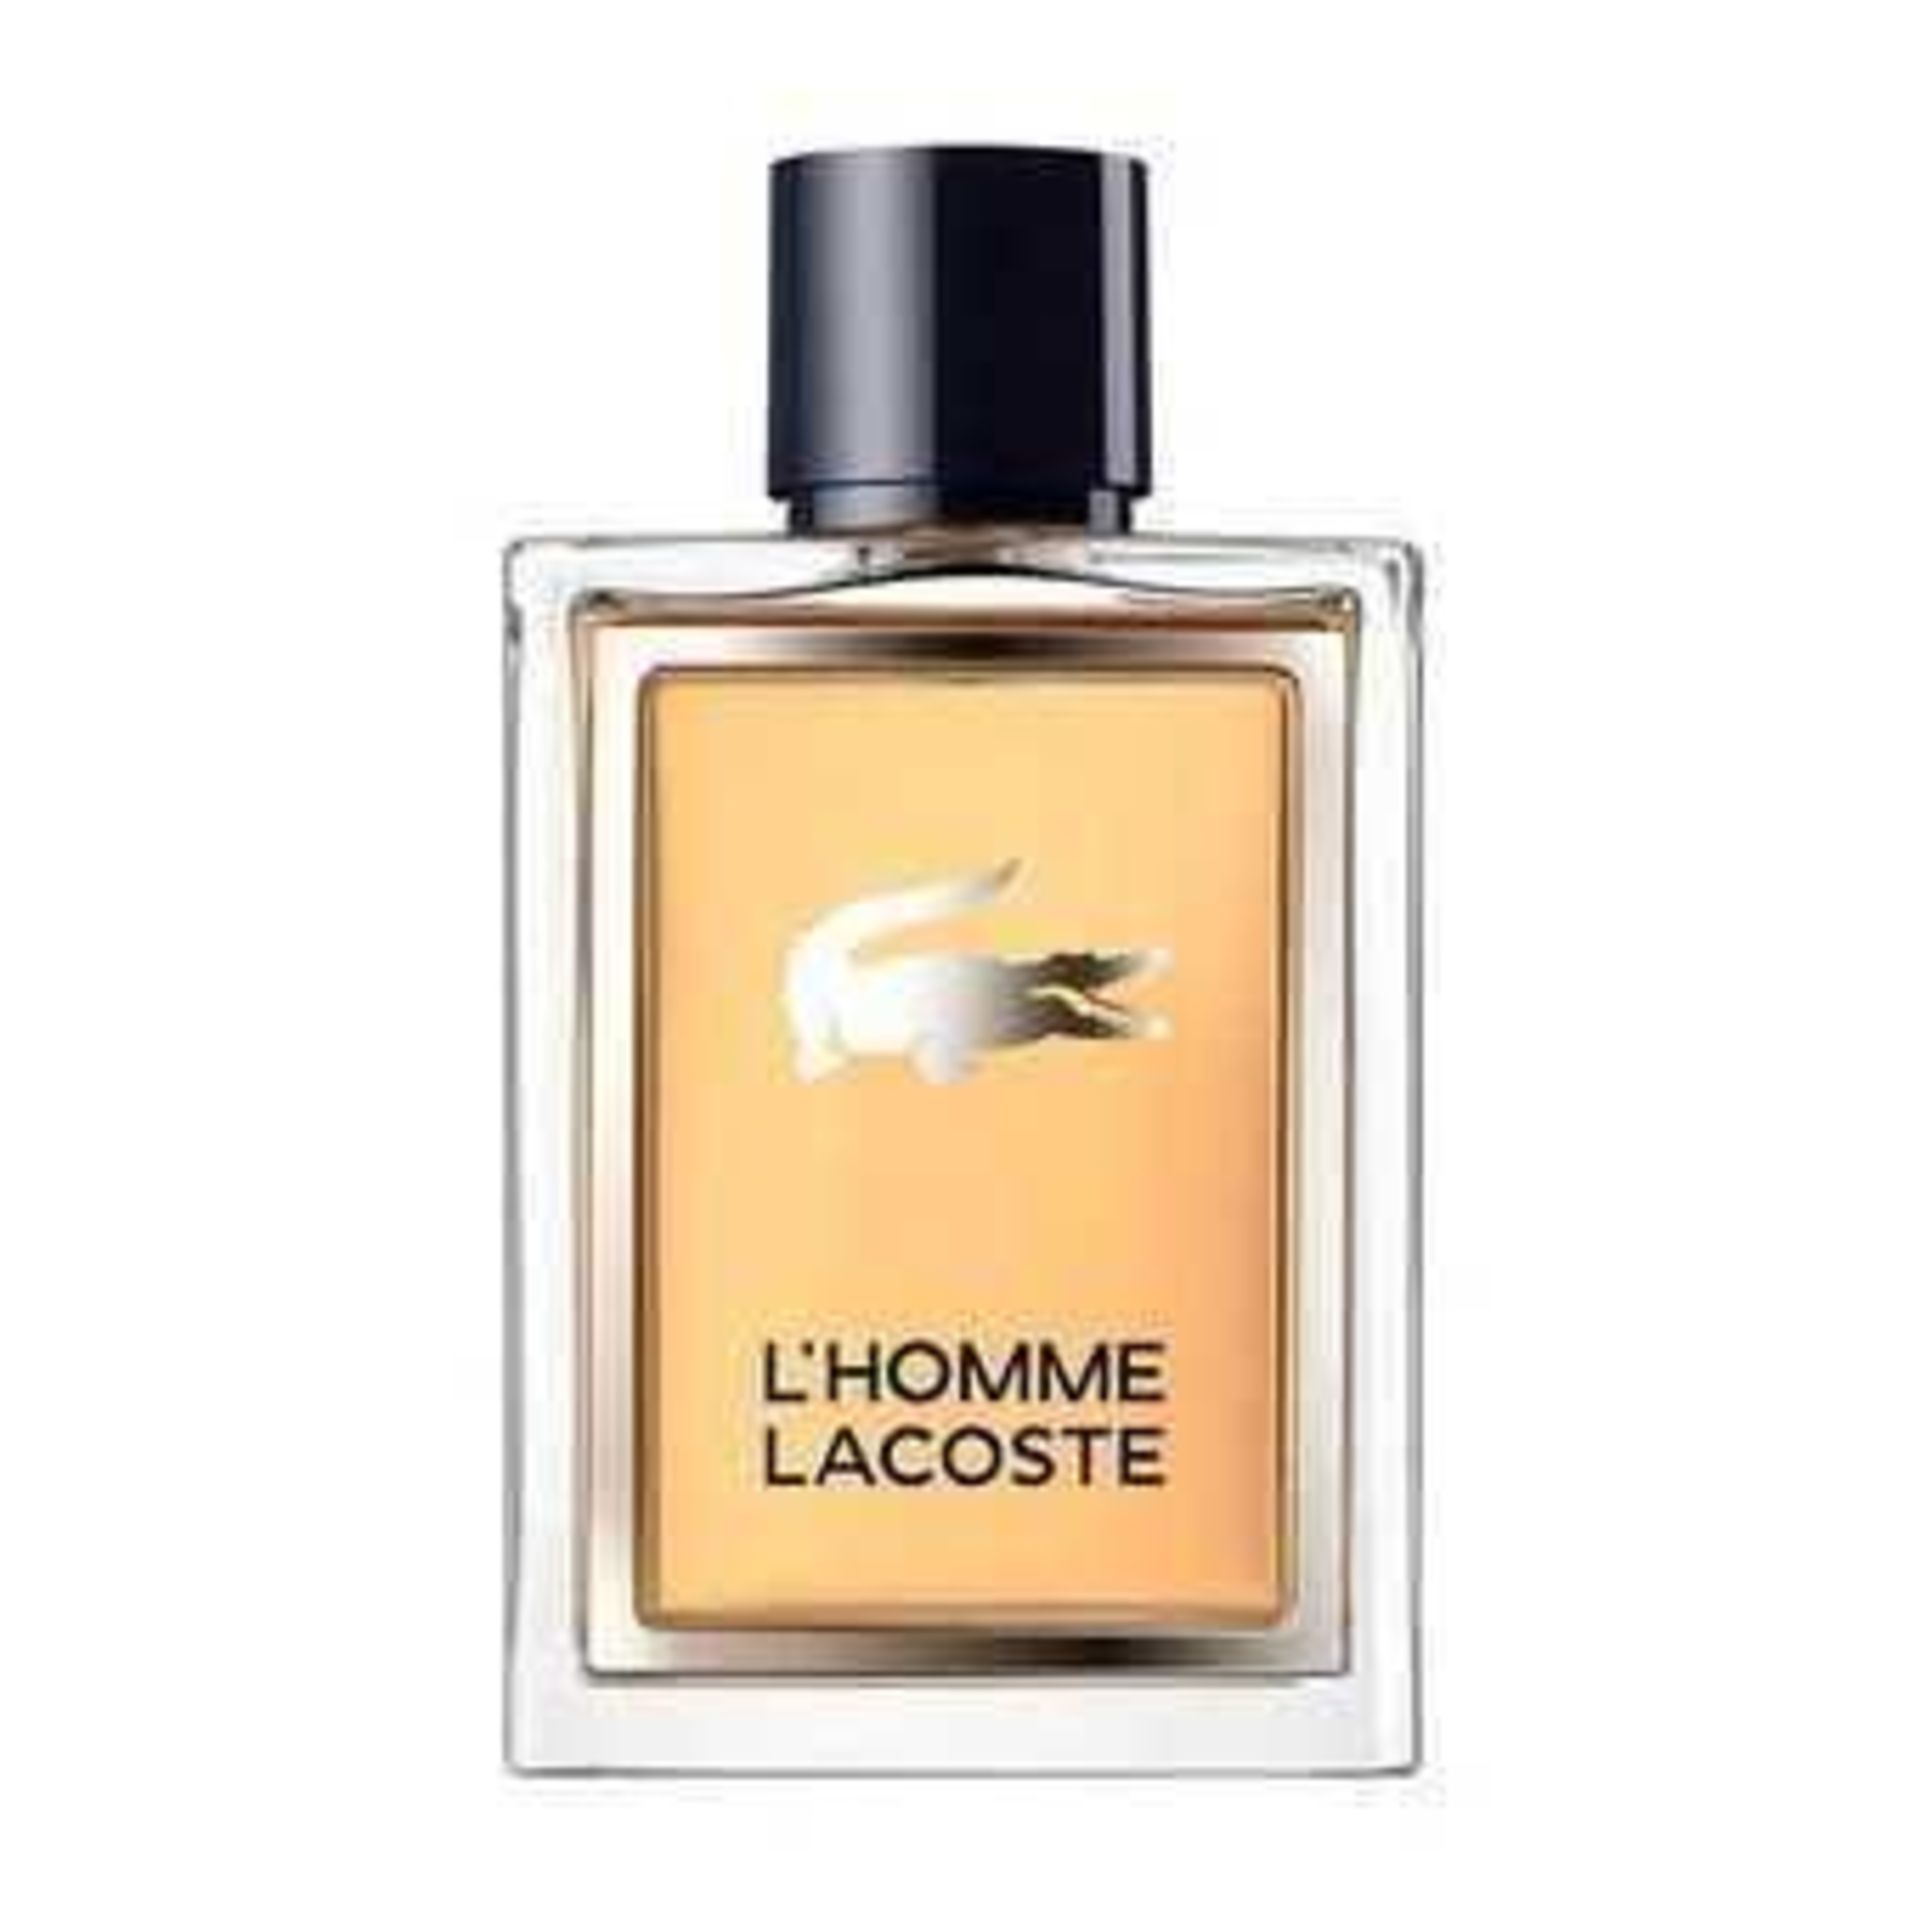 Rrp £40 Unboxed Bottle Of Lacoste L'Homme Eau De Toilette (100Ml) (Ex Display) (Appraisals Available